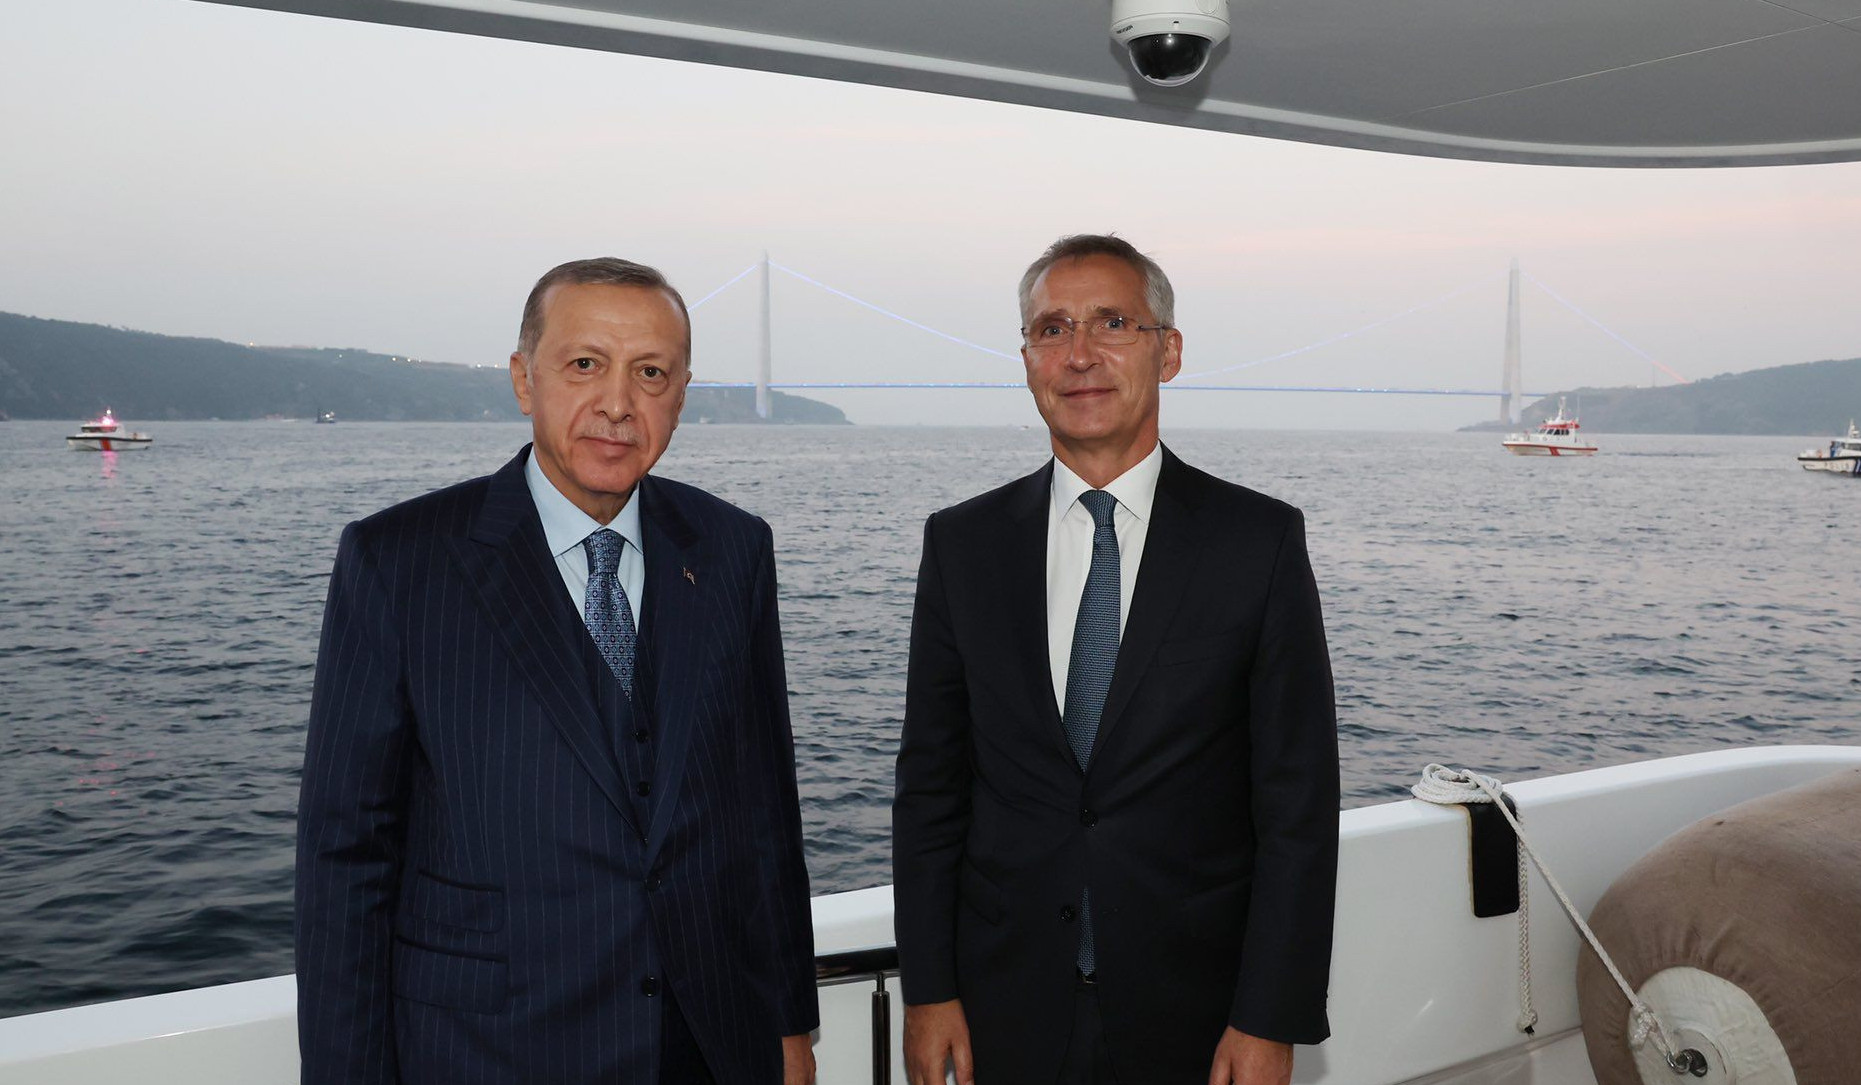 Членство в НАТО Финляндии и Швеции возможно после выполнения требований Турции: Эрдоган